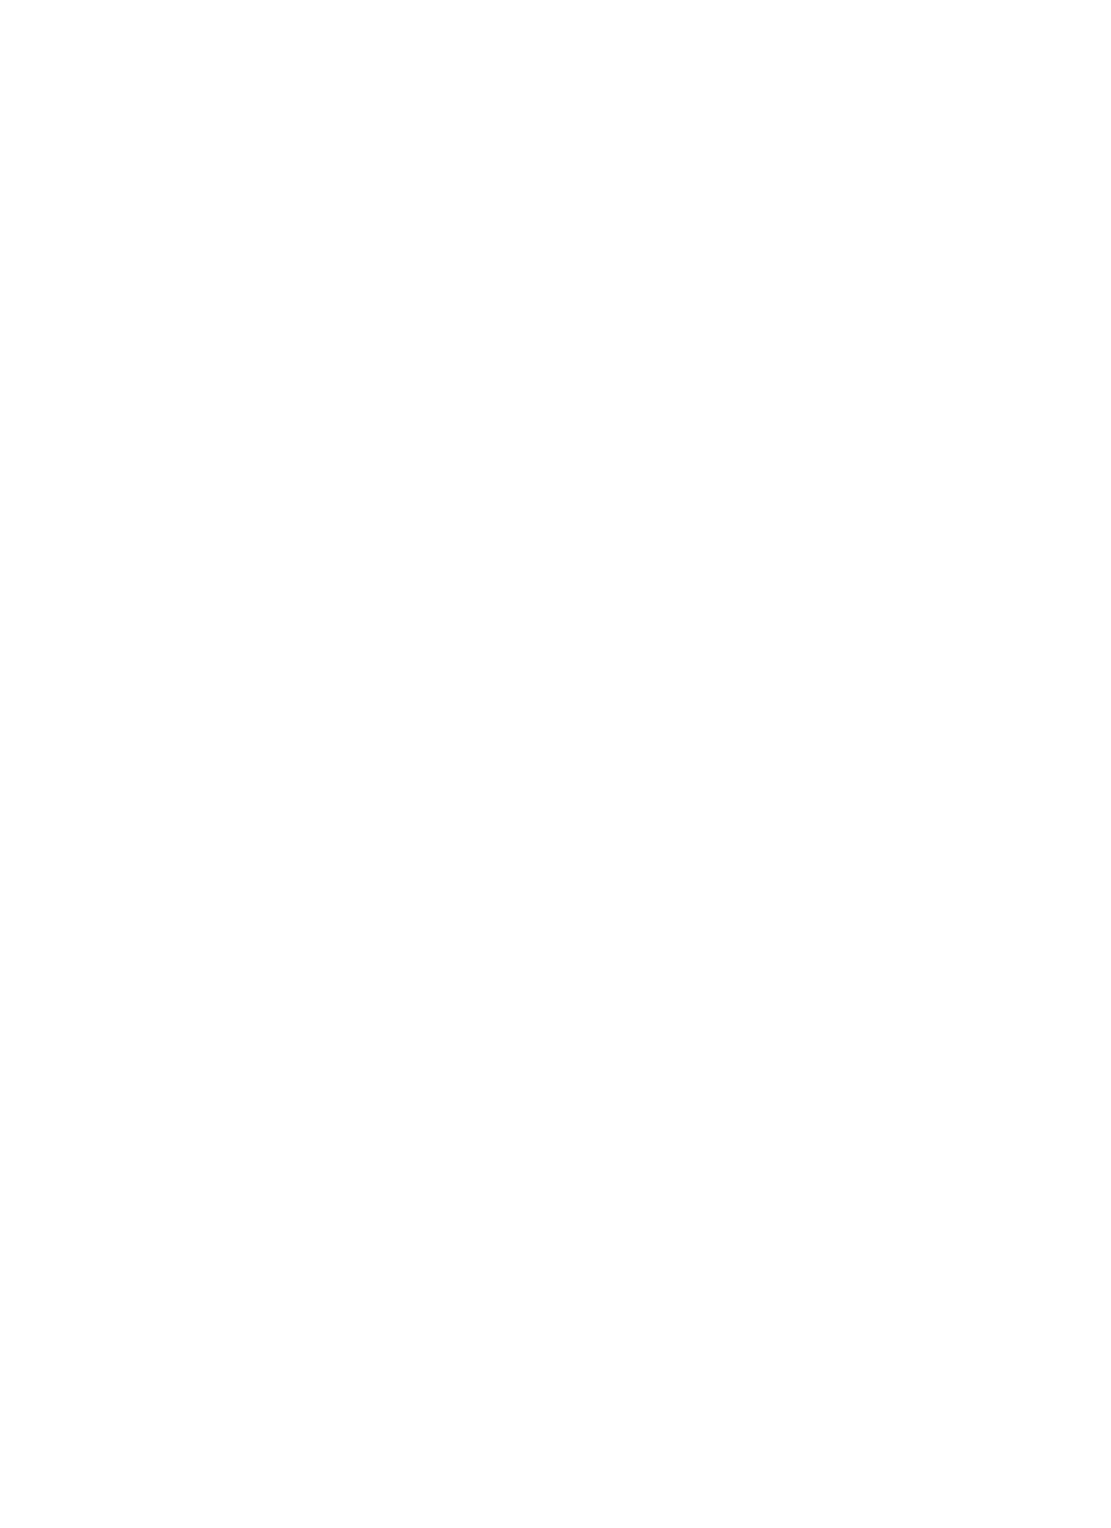 SeaChange logo for dark backgrounds (transparent PNG)